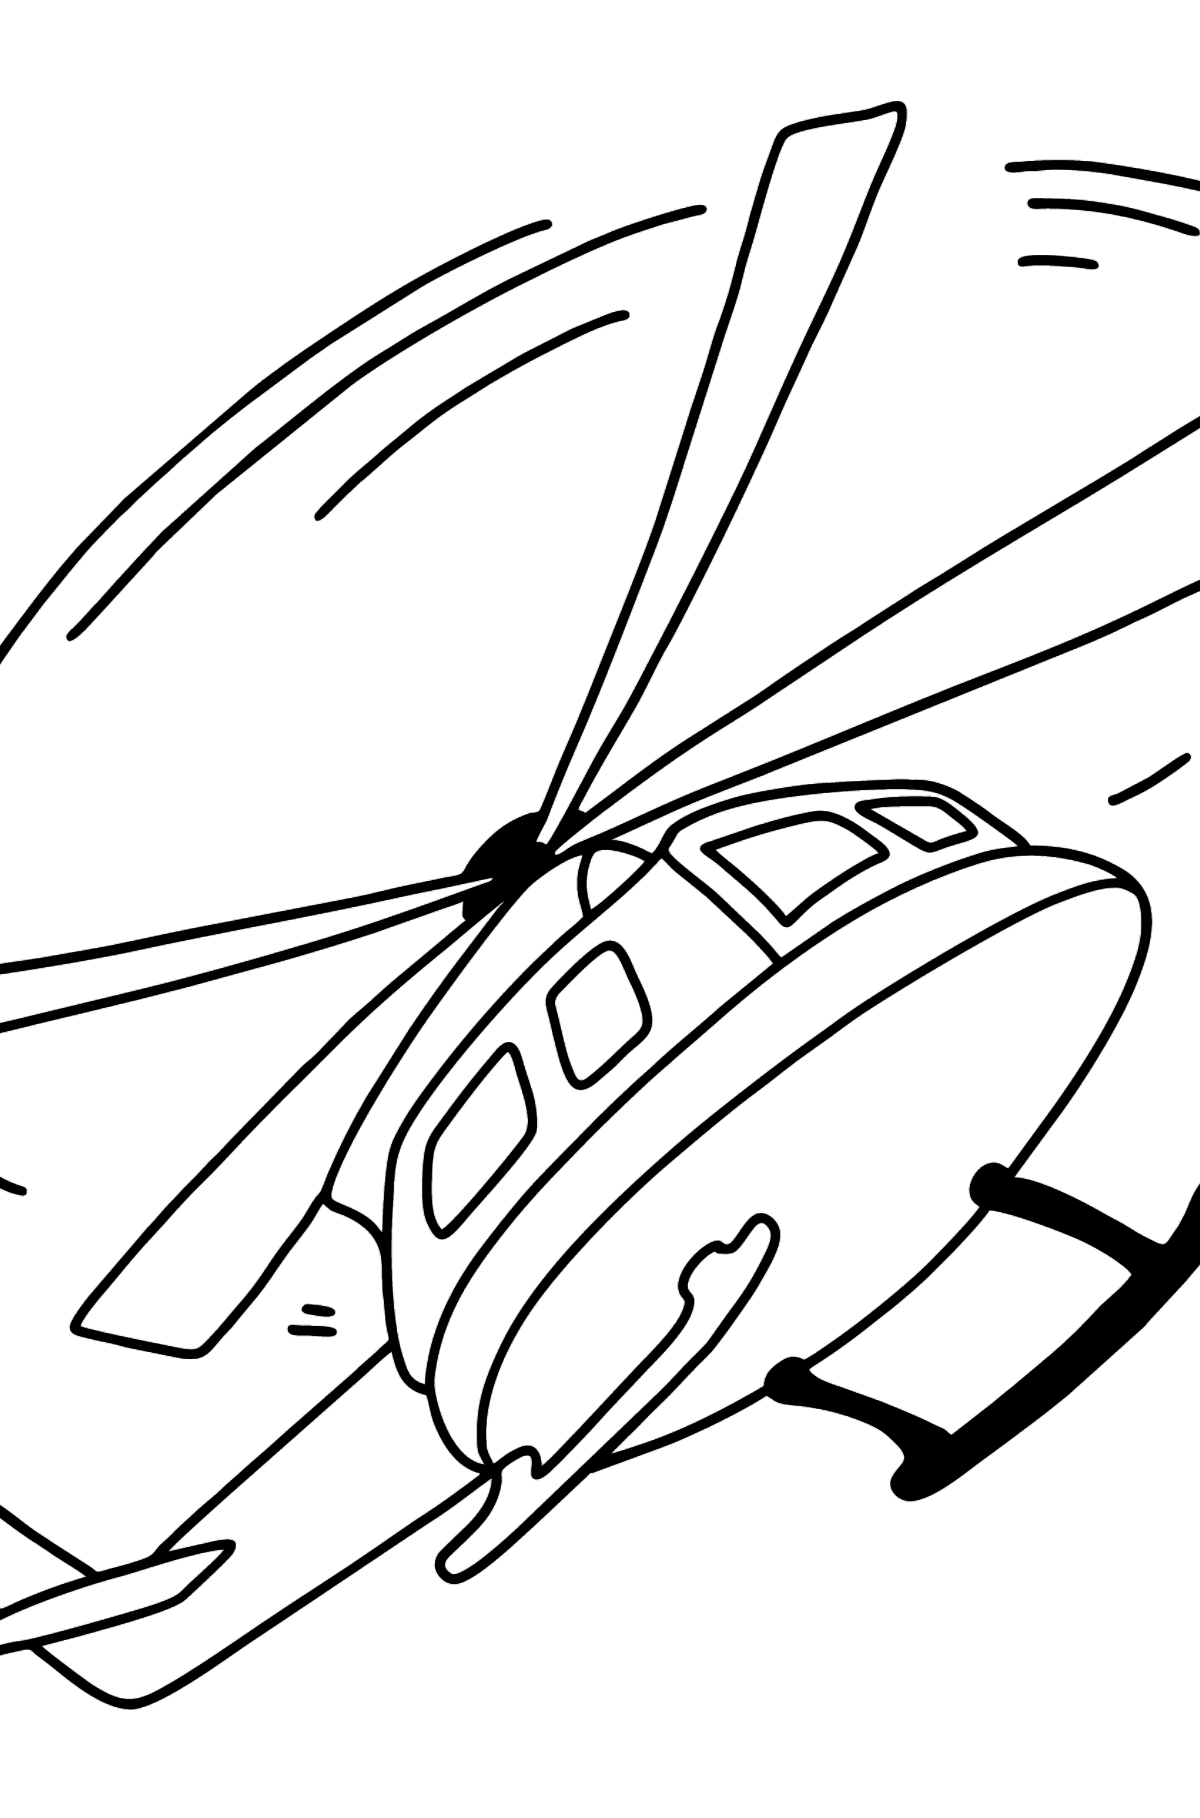 Tegning til fargelegging netthelikopter - Tegninger til fargelegging for barn